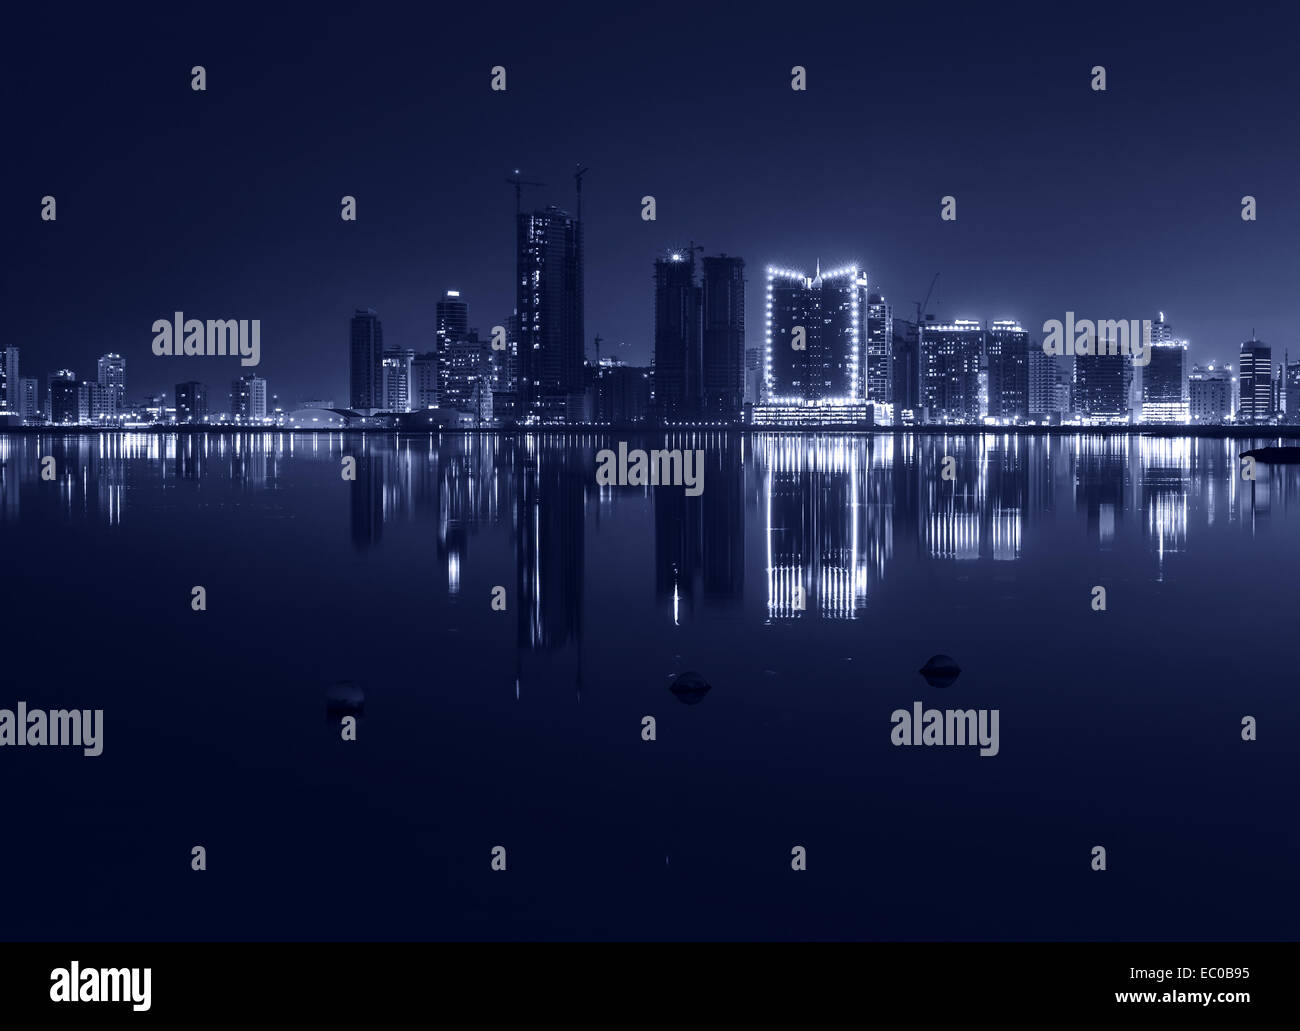 Nuit sur la ville moderne avec des lumières brillantes et reflet dans l'eau. Manama, la capitale de Bahreïn, au Moyen-Orient. Monochro Banque D'Images